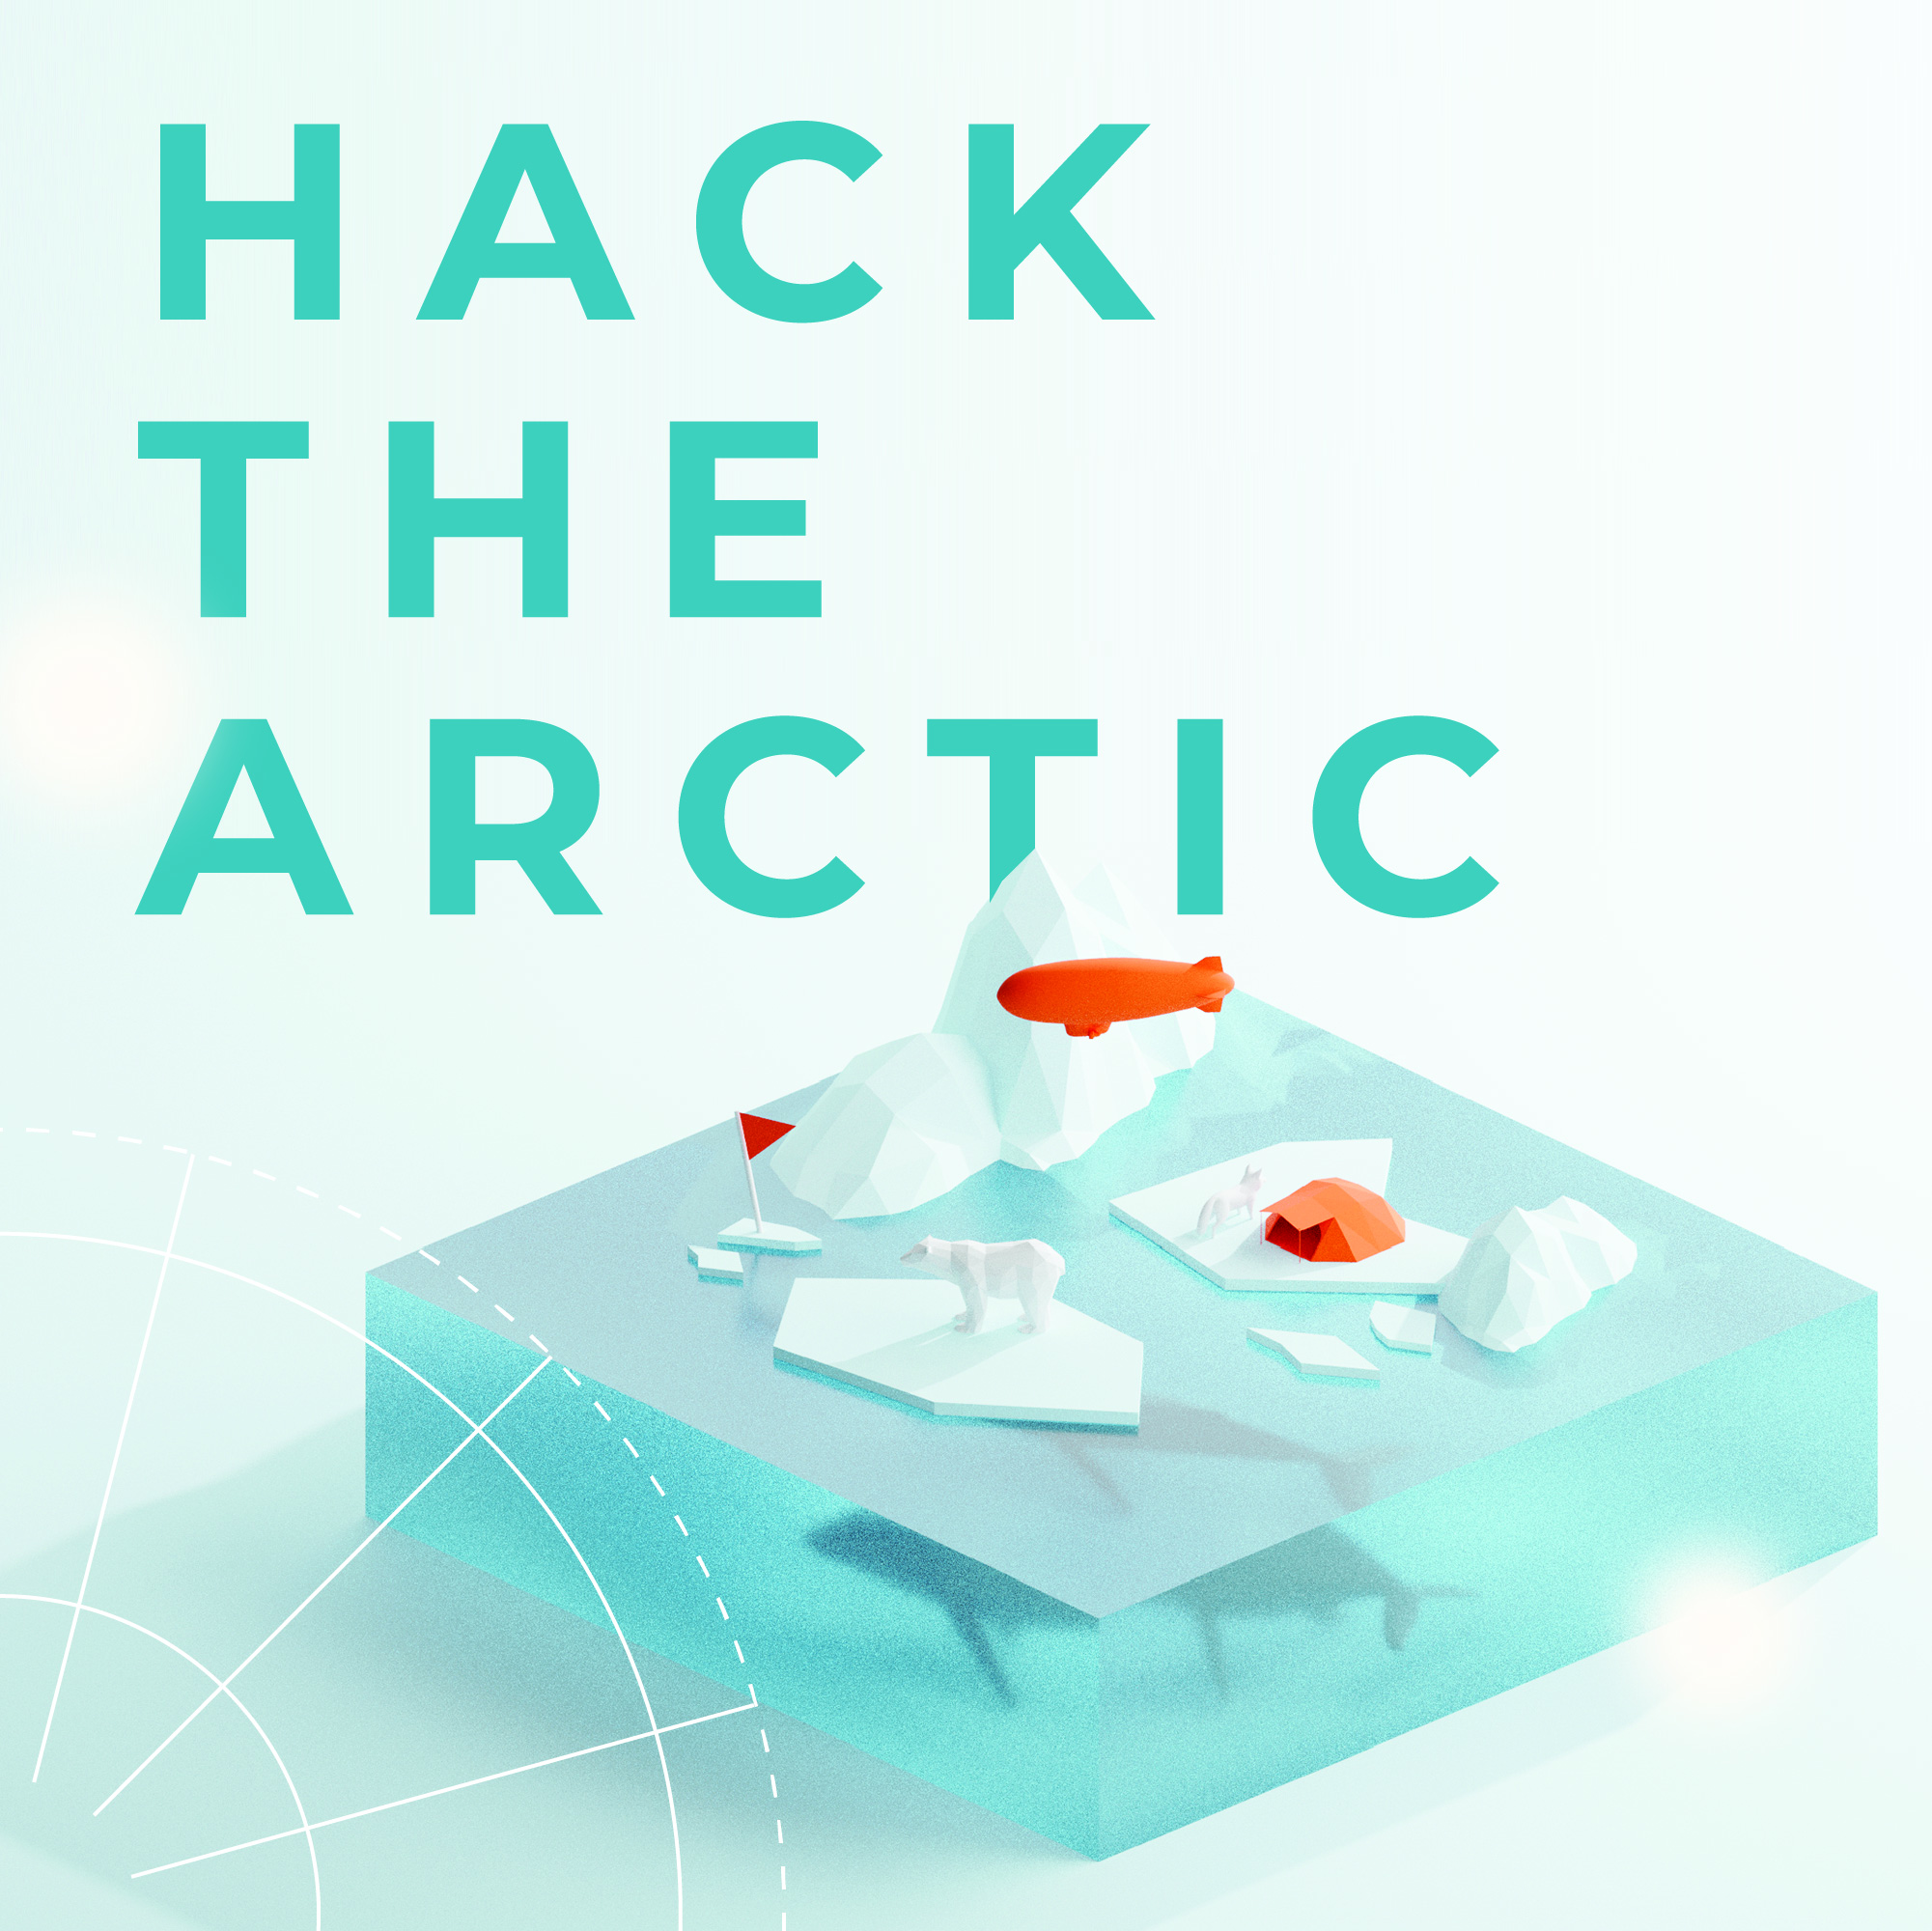 Hack-the-Arctic hackathon